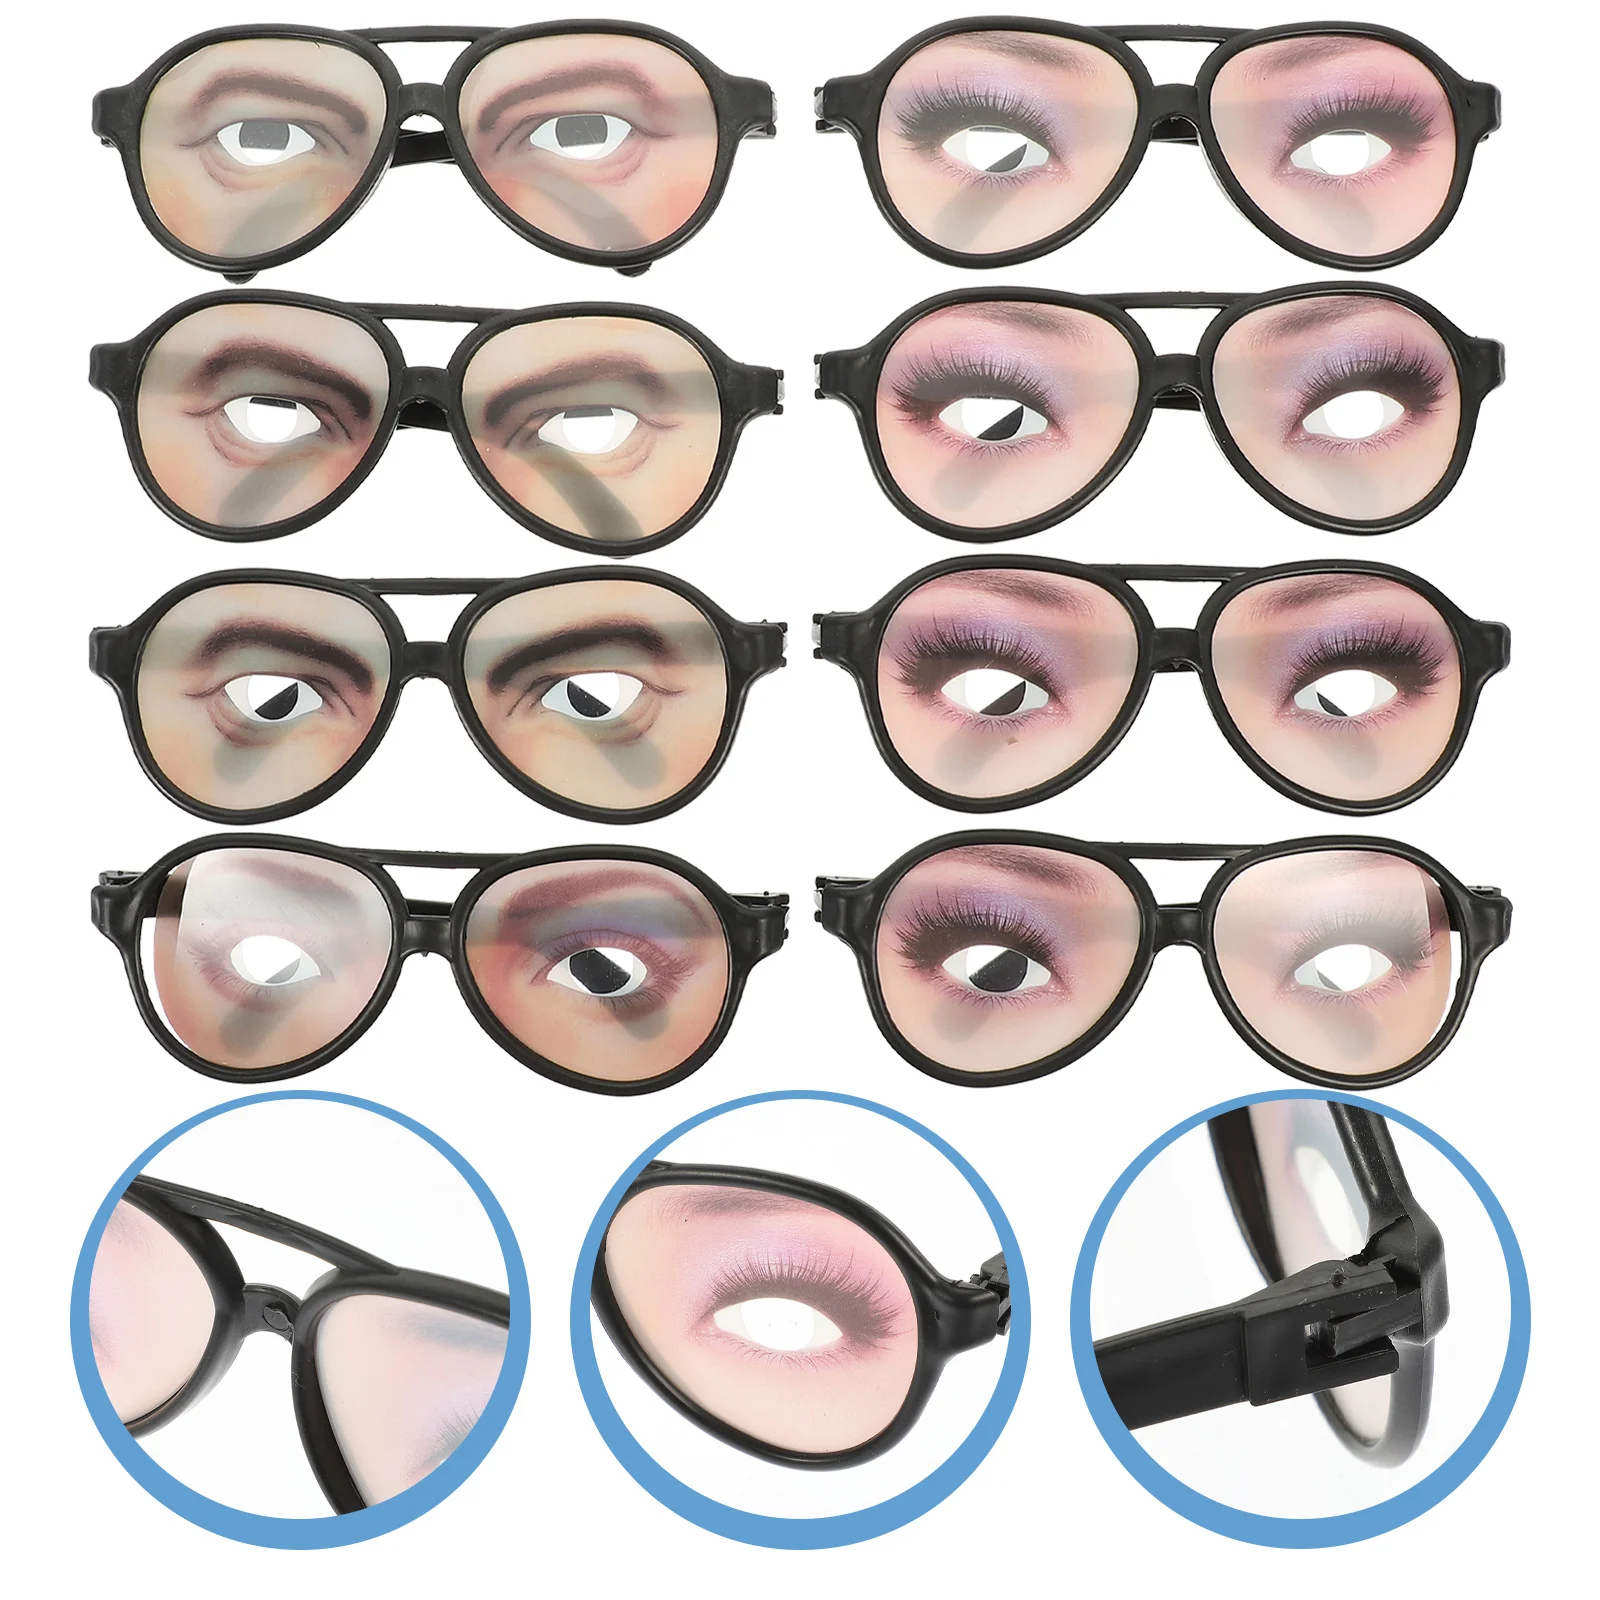 

Очки, забавные очки, глаза для Хэллоуина, прикол, маскировка, солнцезащитные очки, фотография, очки для взрослых